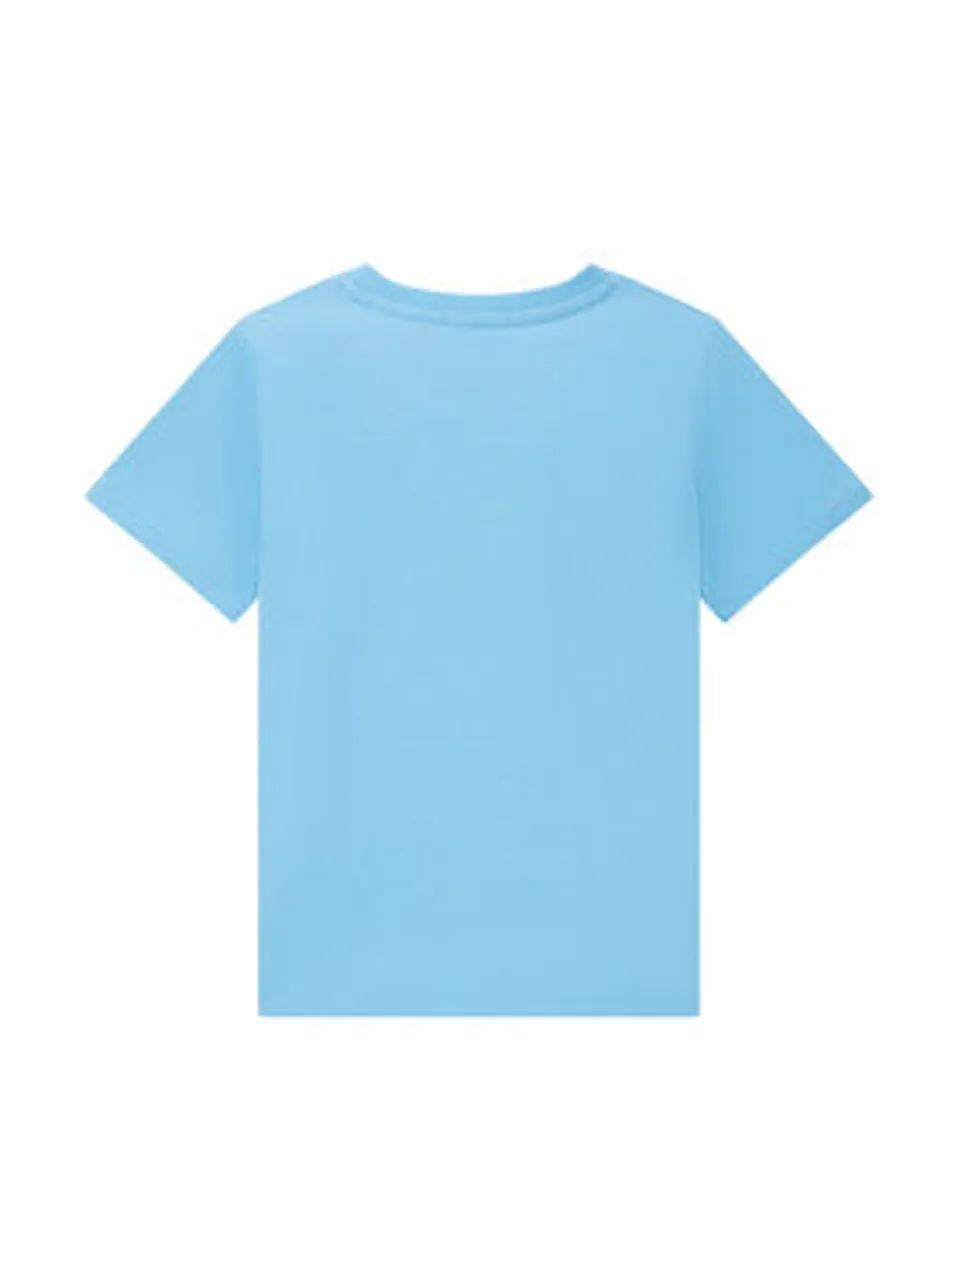 Tom Tailor T-Shirt 1035061 Himmelblau